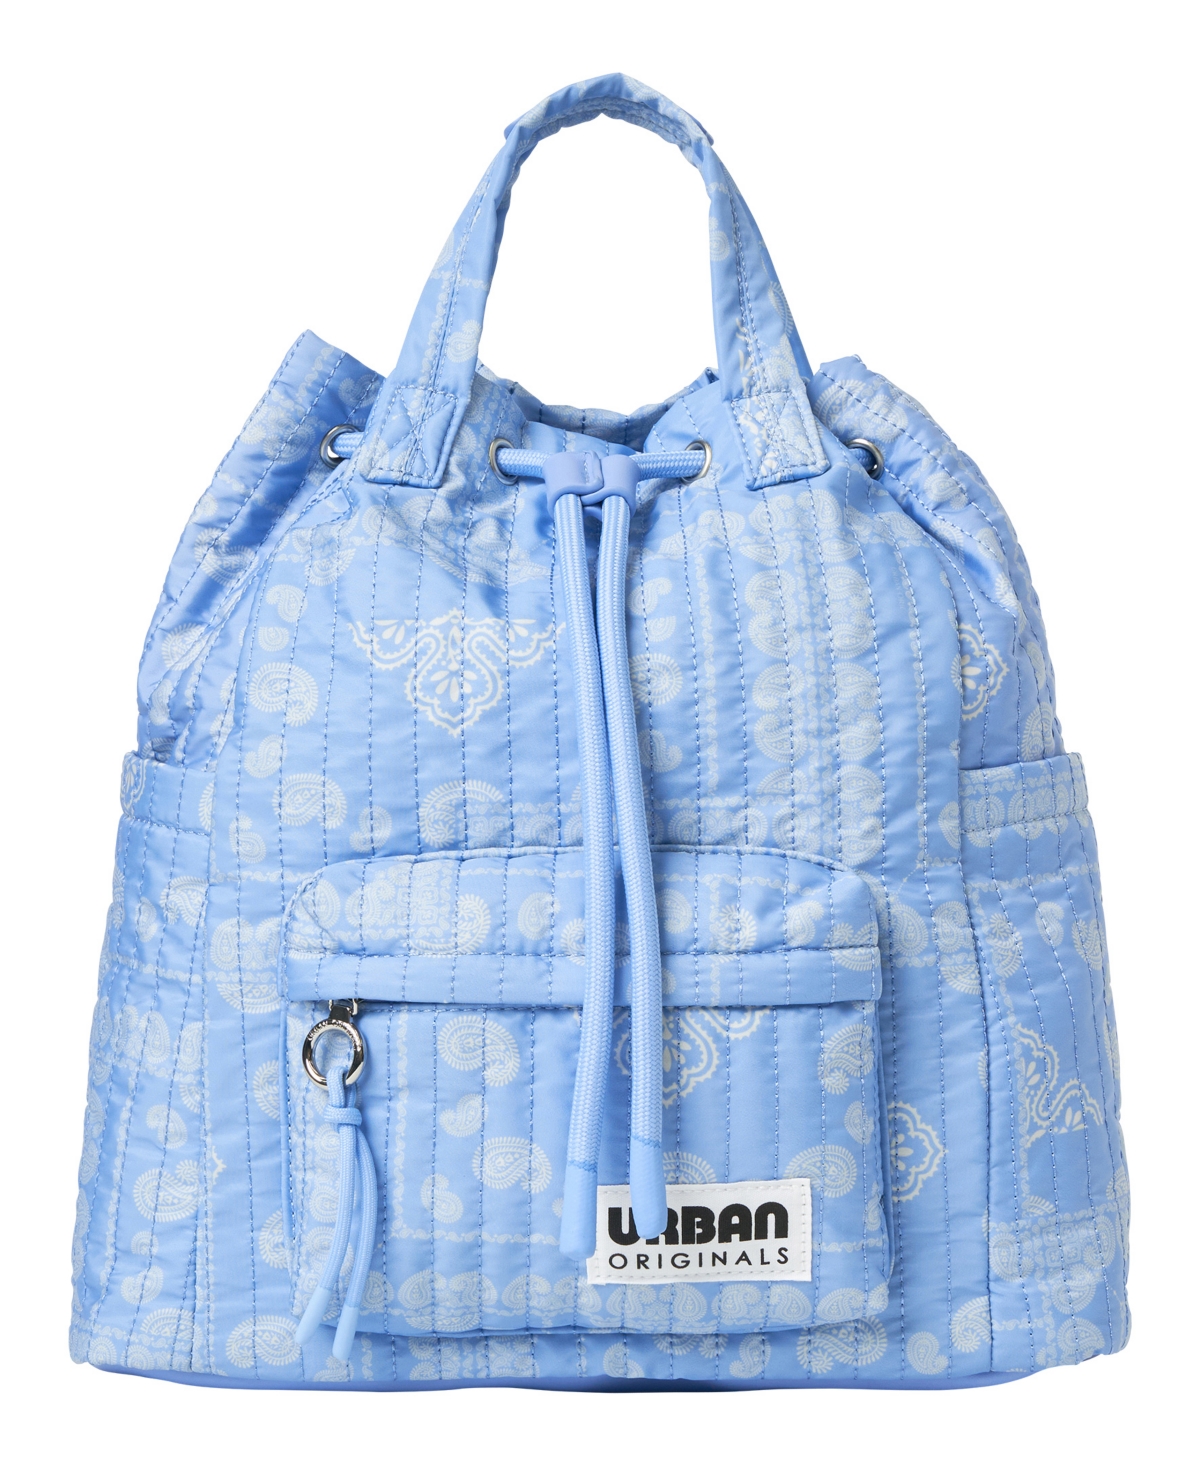 Urban Originals Soulmate Medium Backpack In Bandana Blue